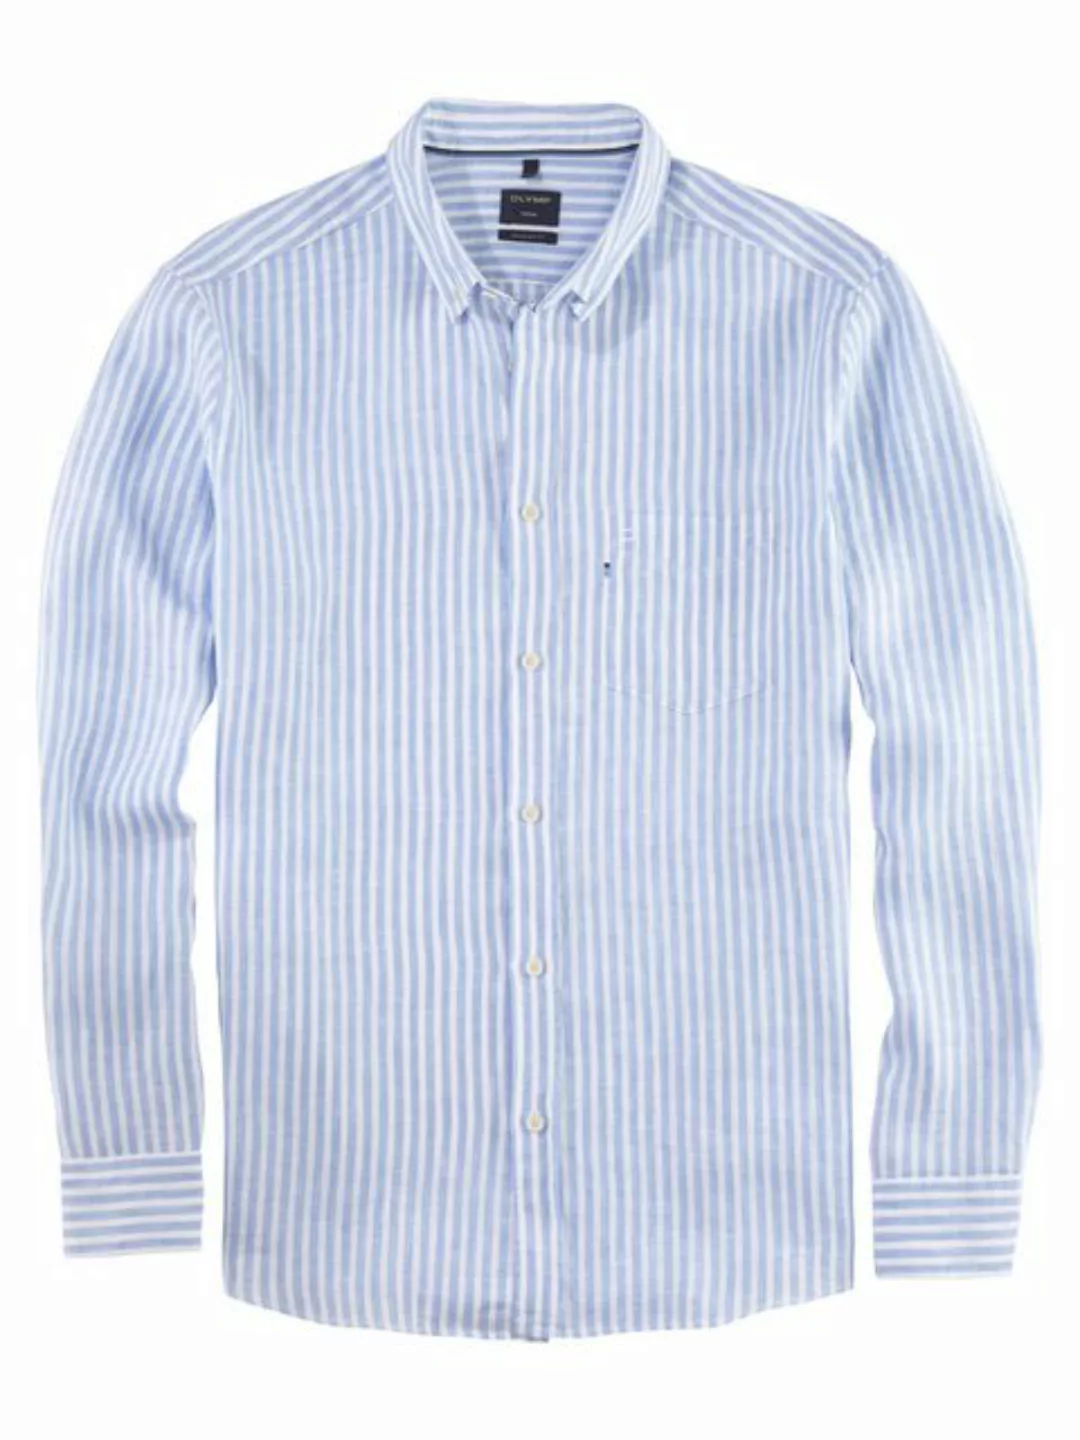 OLYMP Leinenhemd 4026/54 Hemden günstig online kaufen